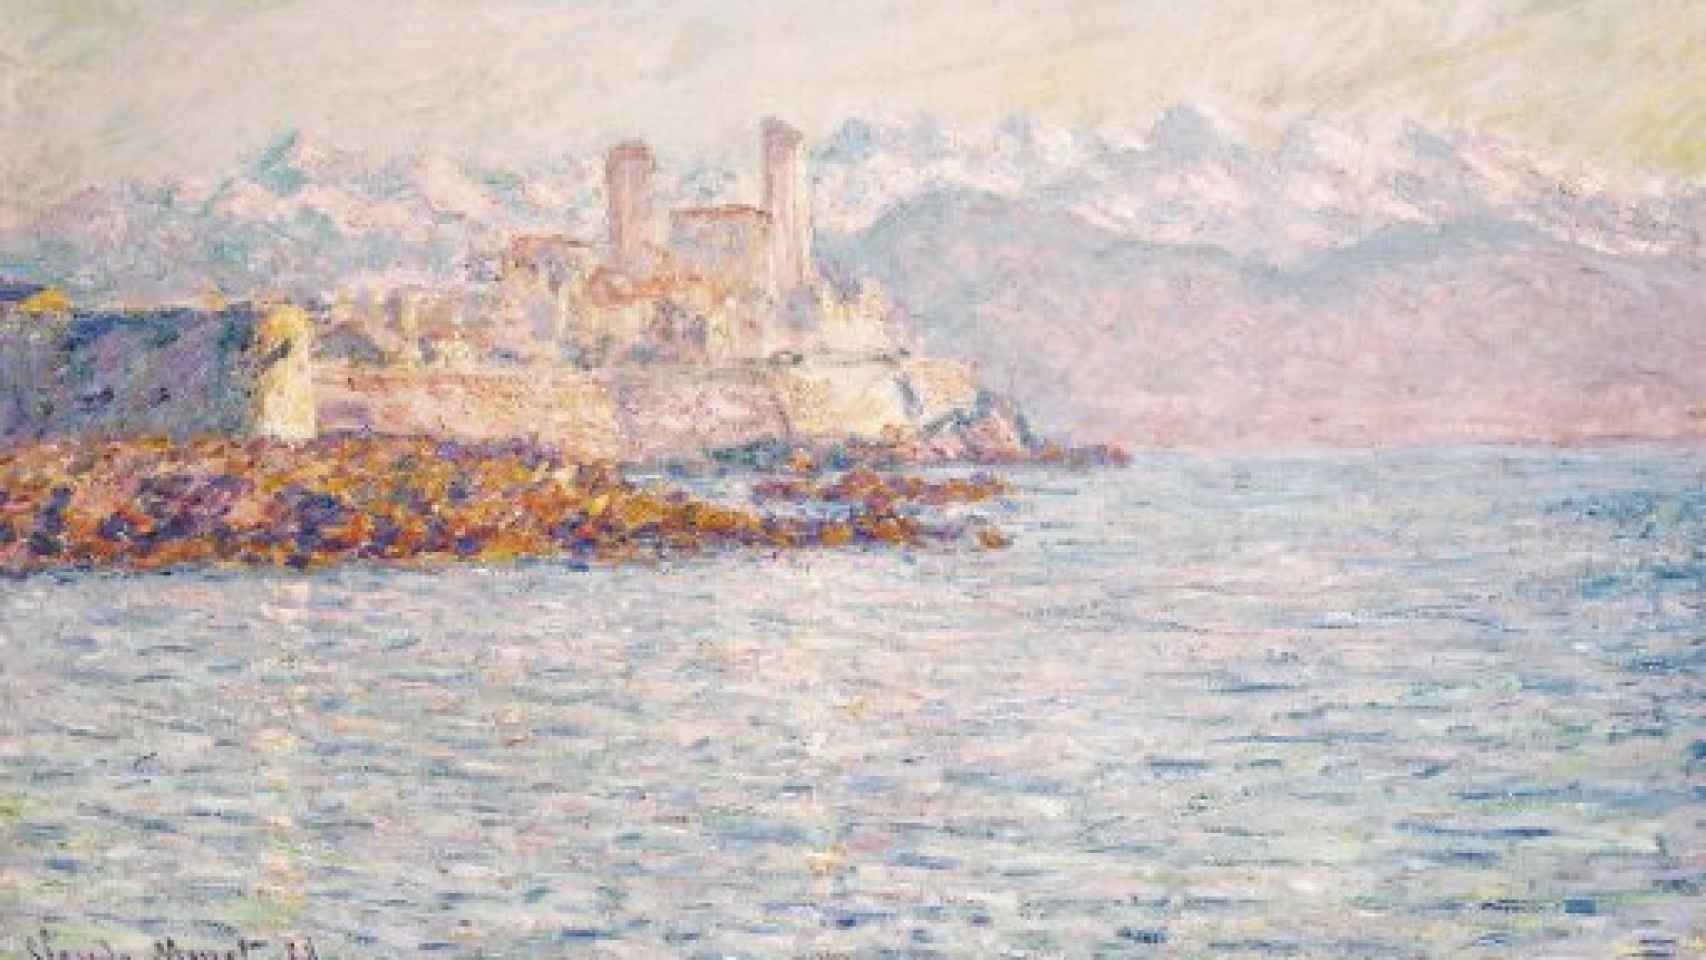 Image: Monet y Boudin, reflejos artísticos y acuáticos